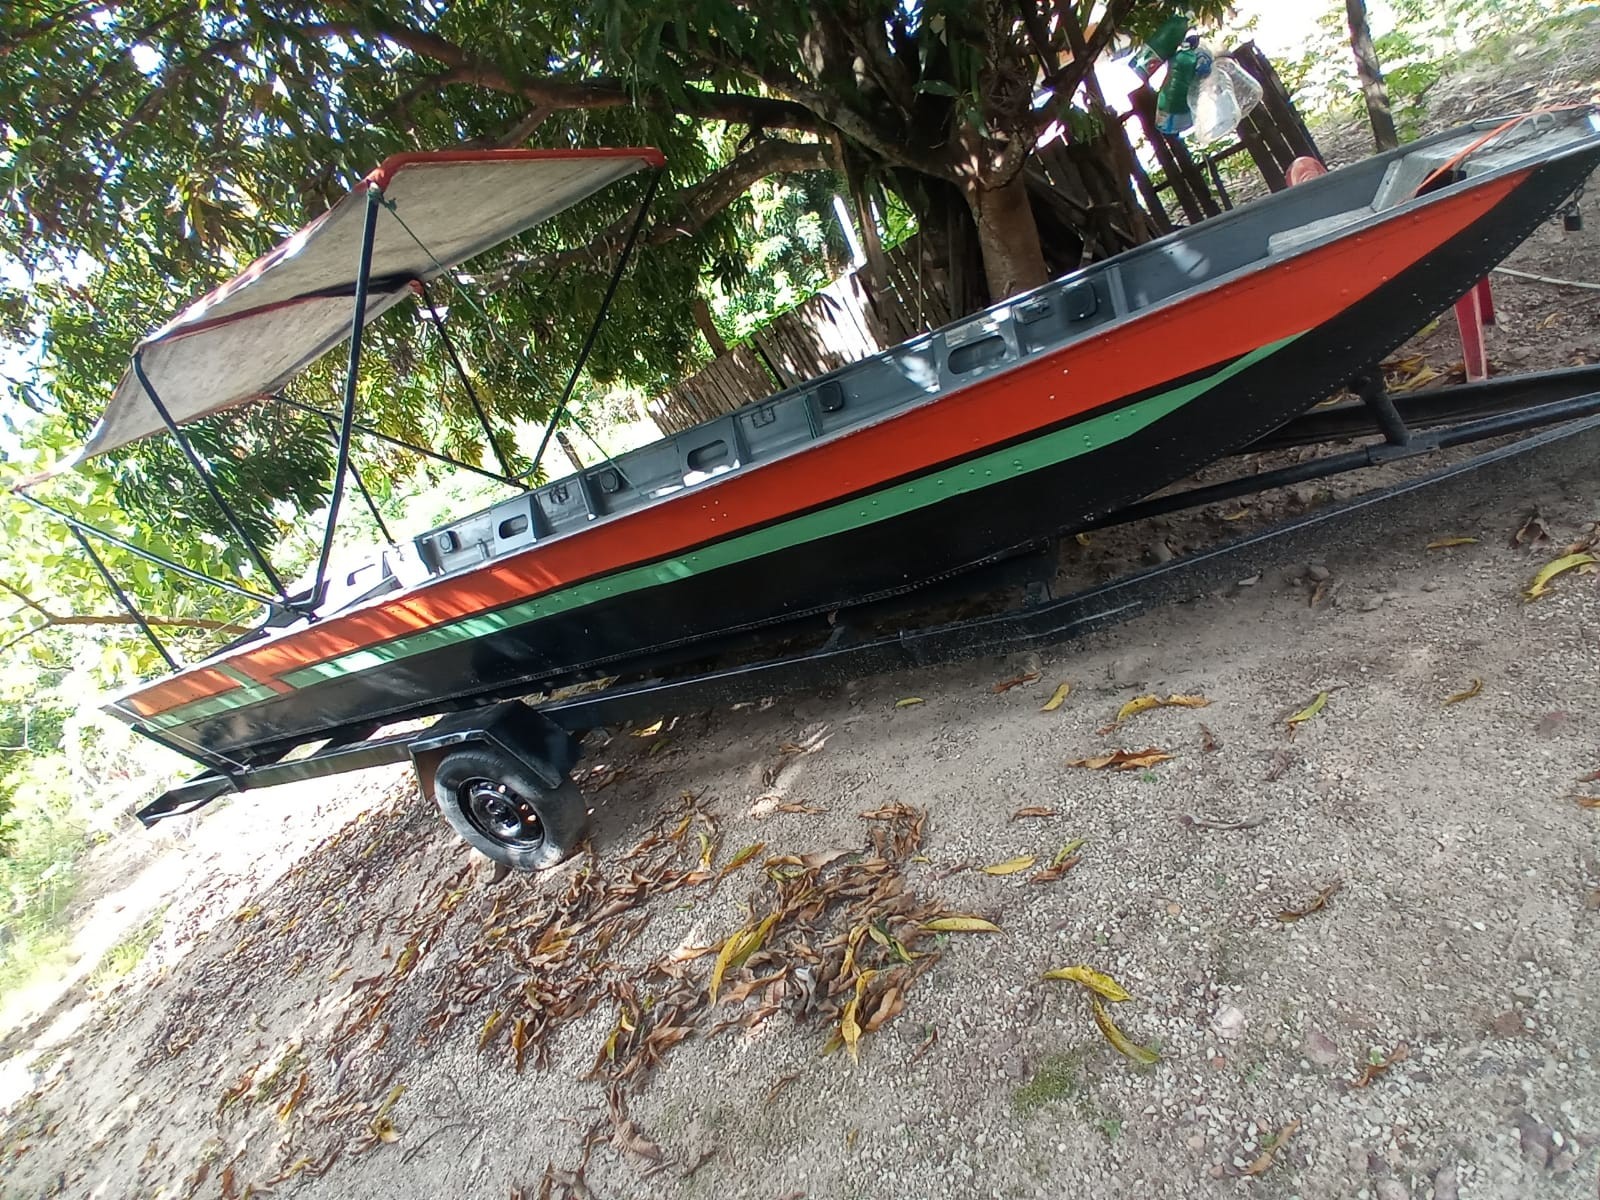 Polícia identifica suspeito de estelionato e recupera barco roubado avaliado em R$ 20 mil